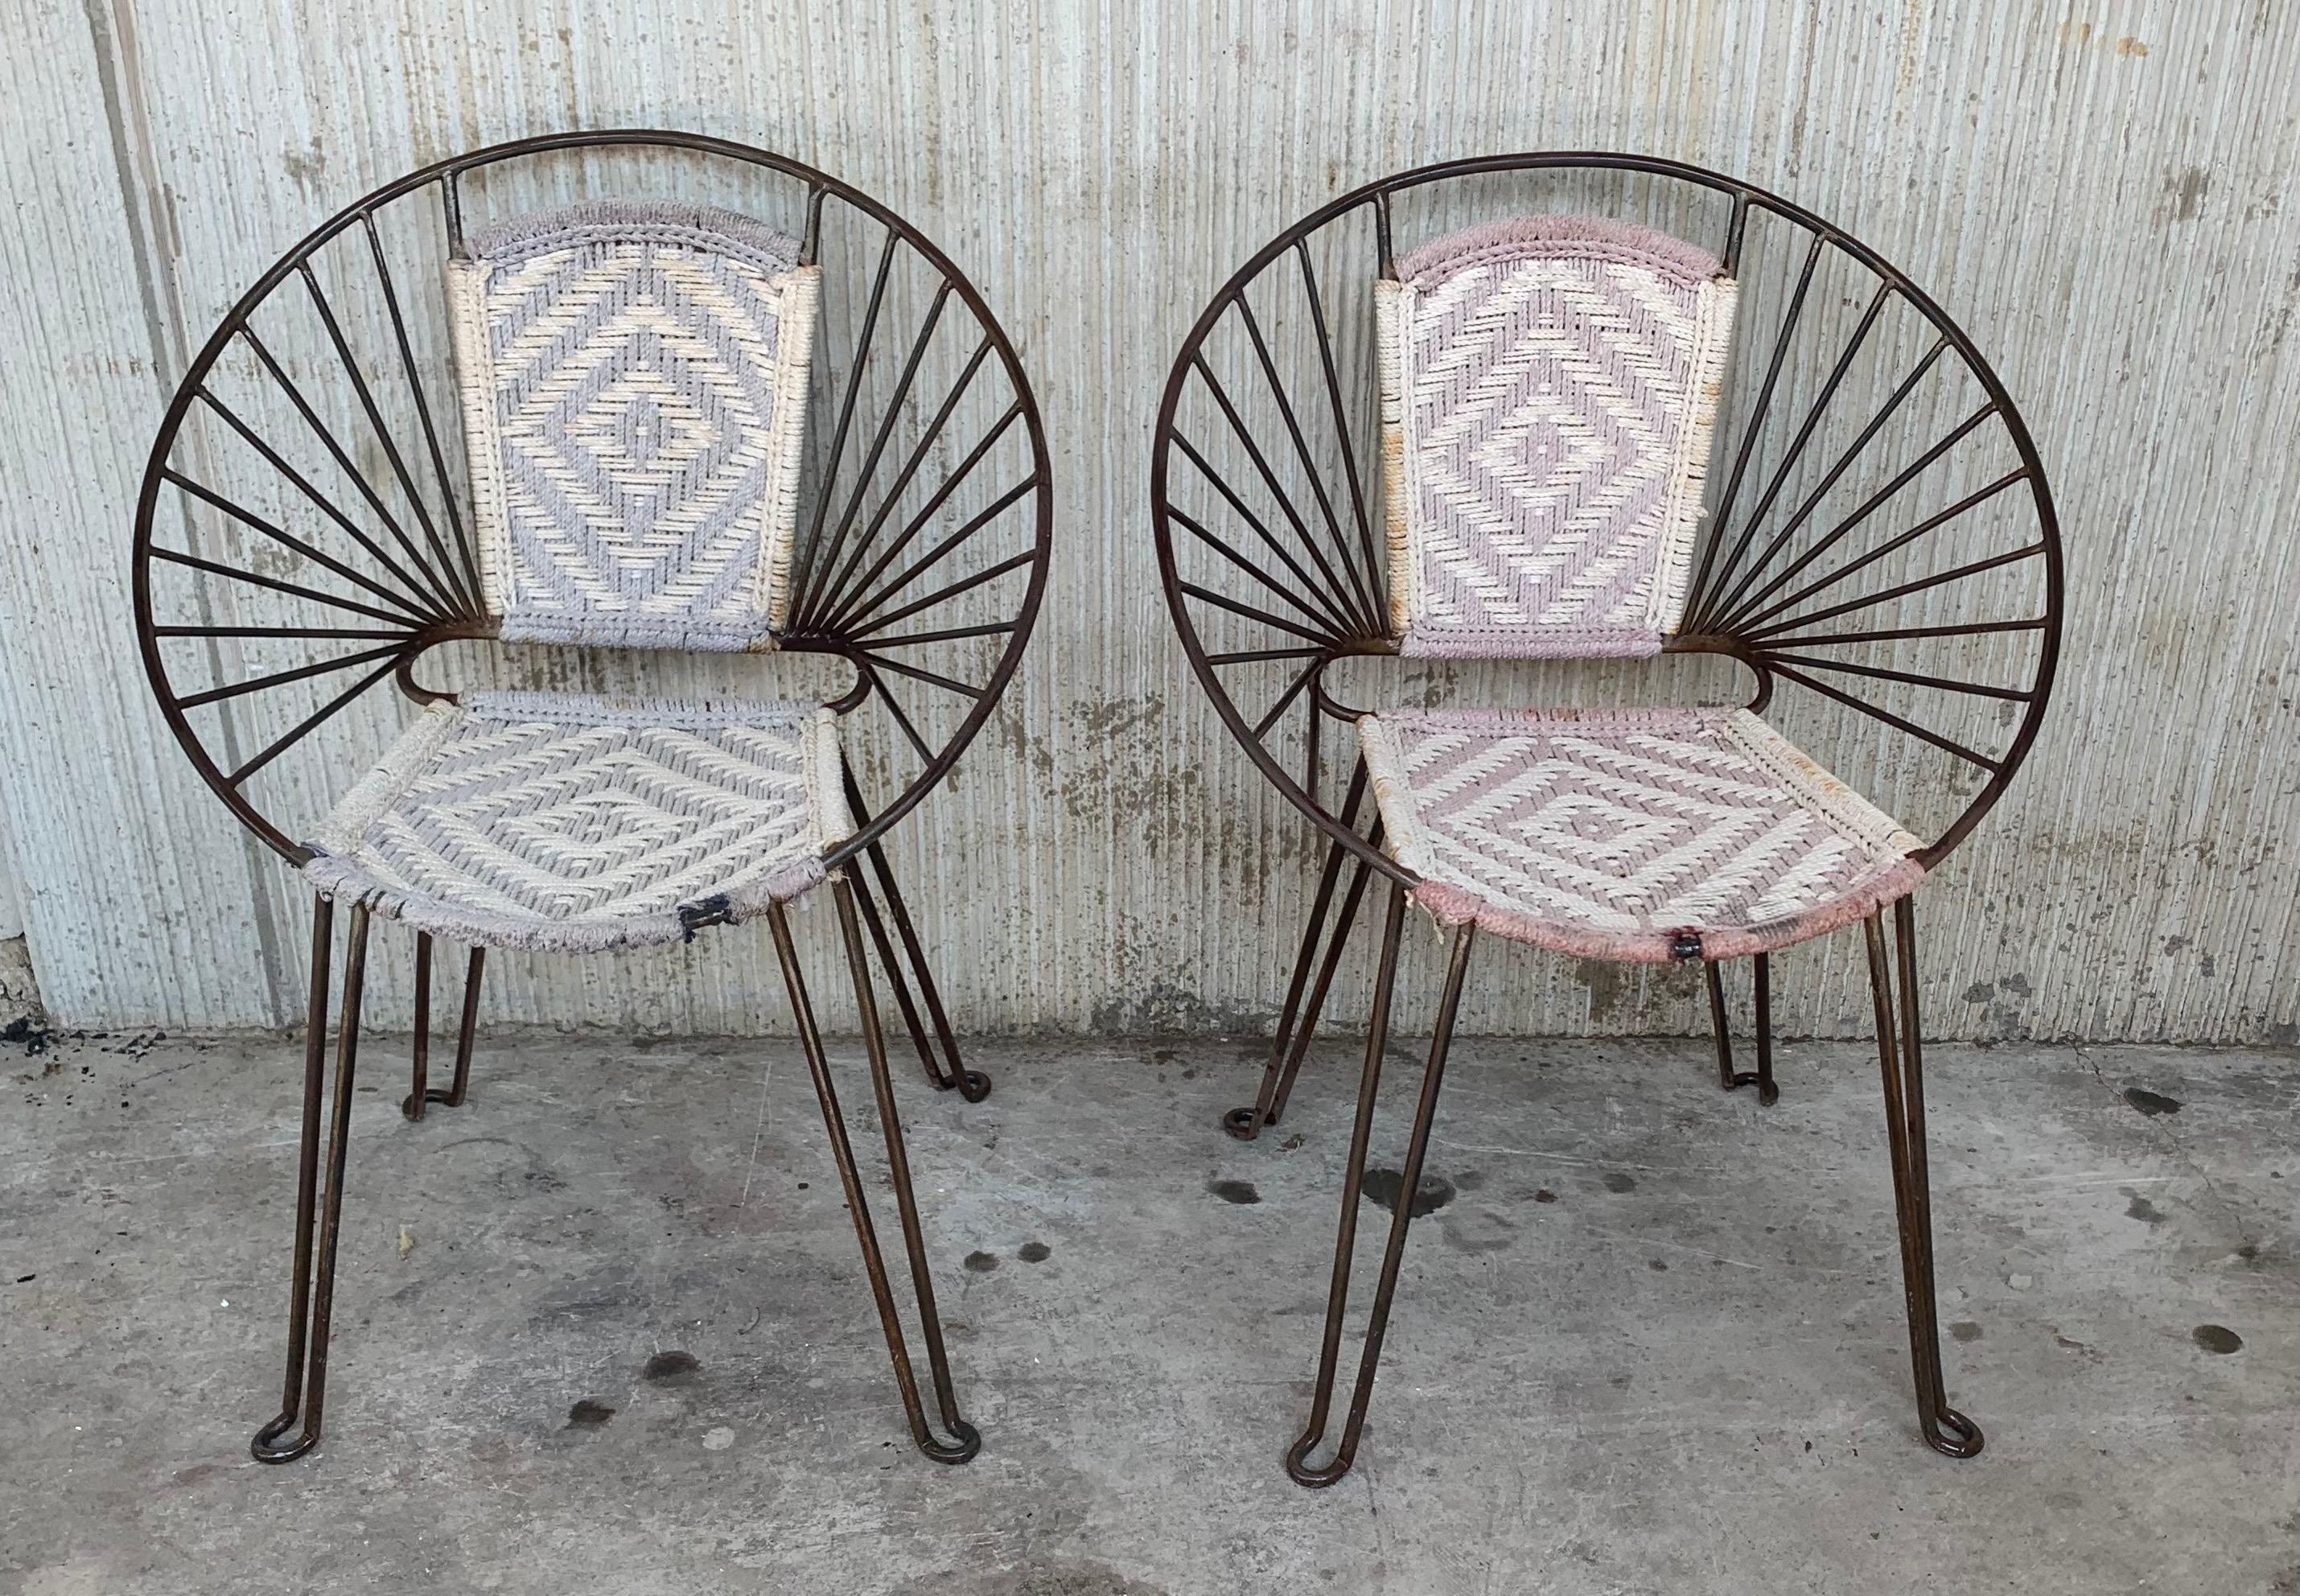 Superbes chaises en fer de style Mid-Century Modern, avec une finition saisissante en métal nu. Magnifique cadre rond, siège canné, solides pieds en fer. Vintage By Design Modern Salterini.